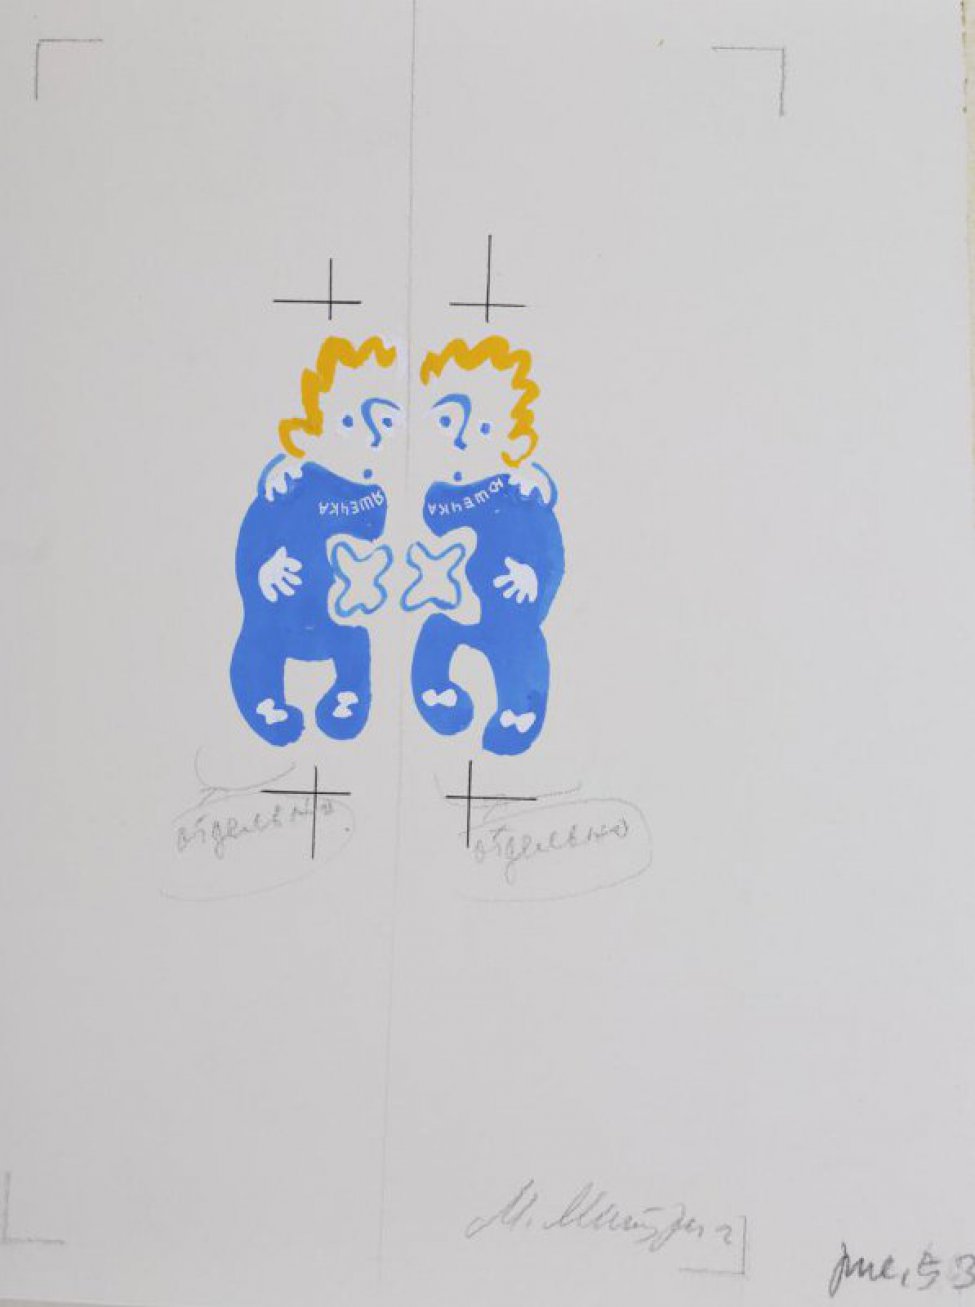 Стилизованное изображение двух одинаковых человечков с желтыми волосами в голубых костюмах; на груди левого надпись: "яшечка", на груди правого: "юшечка".